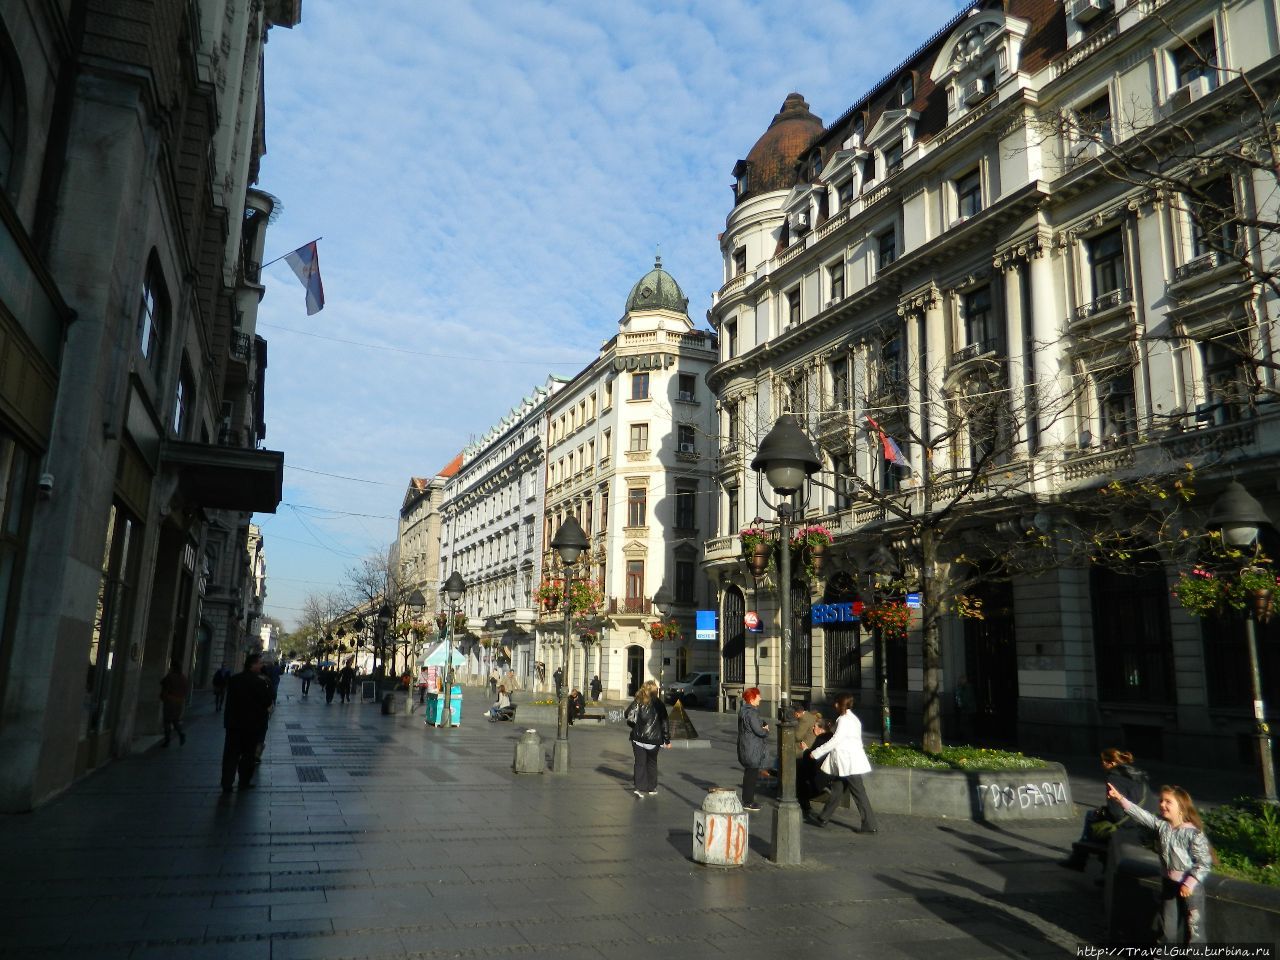 Пешеходная улица князя Михаила Белград, Сербия